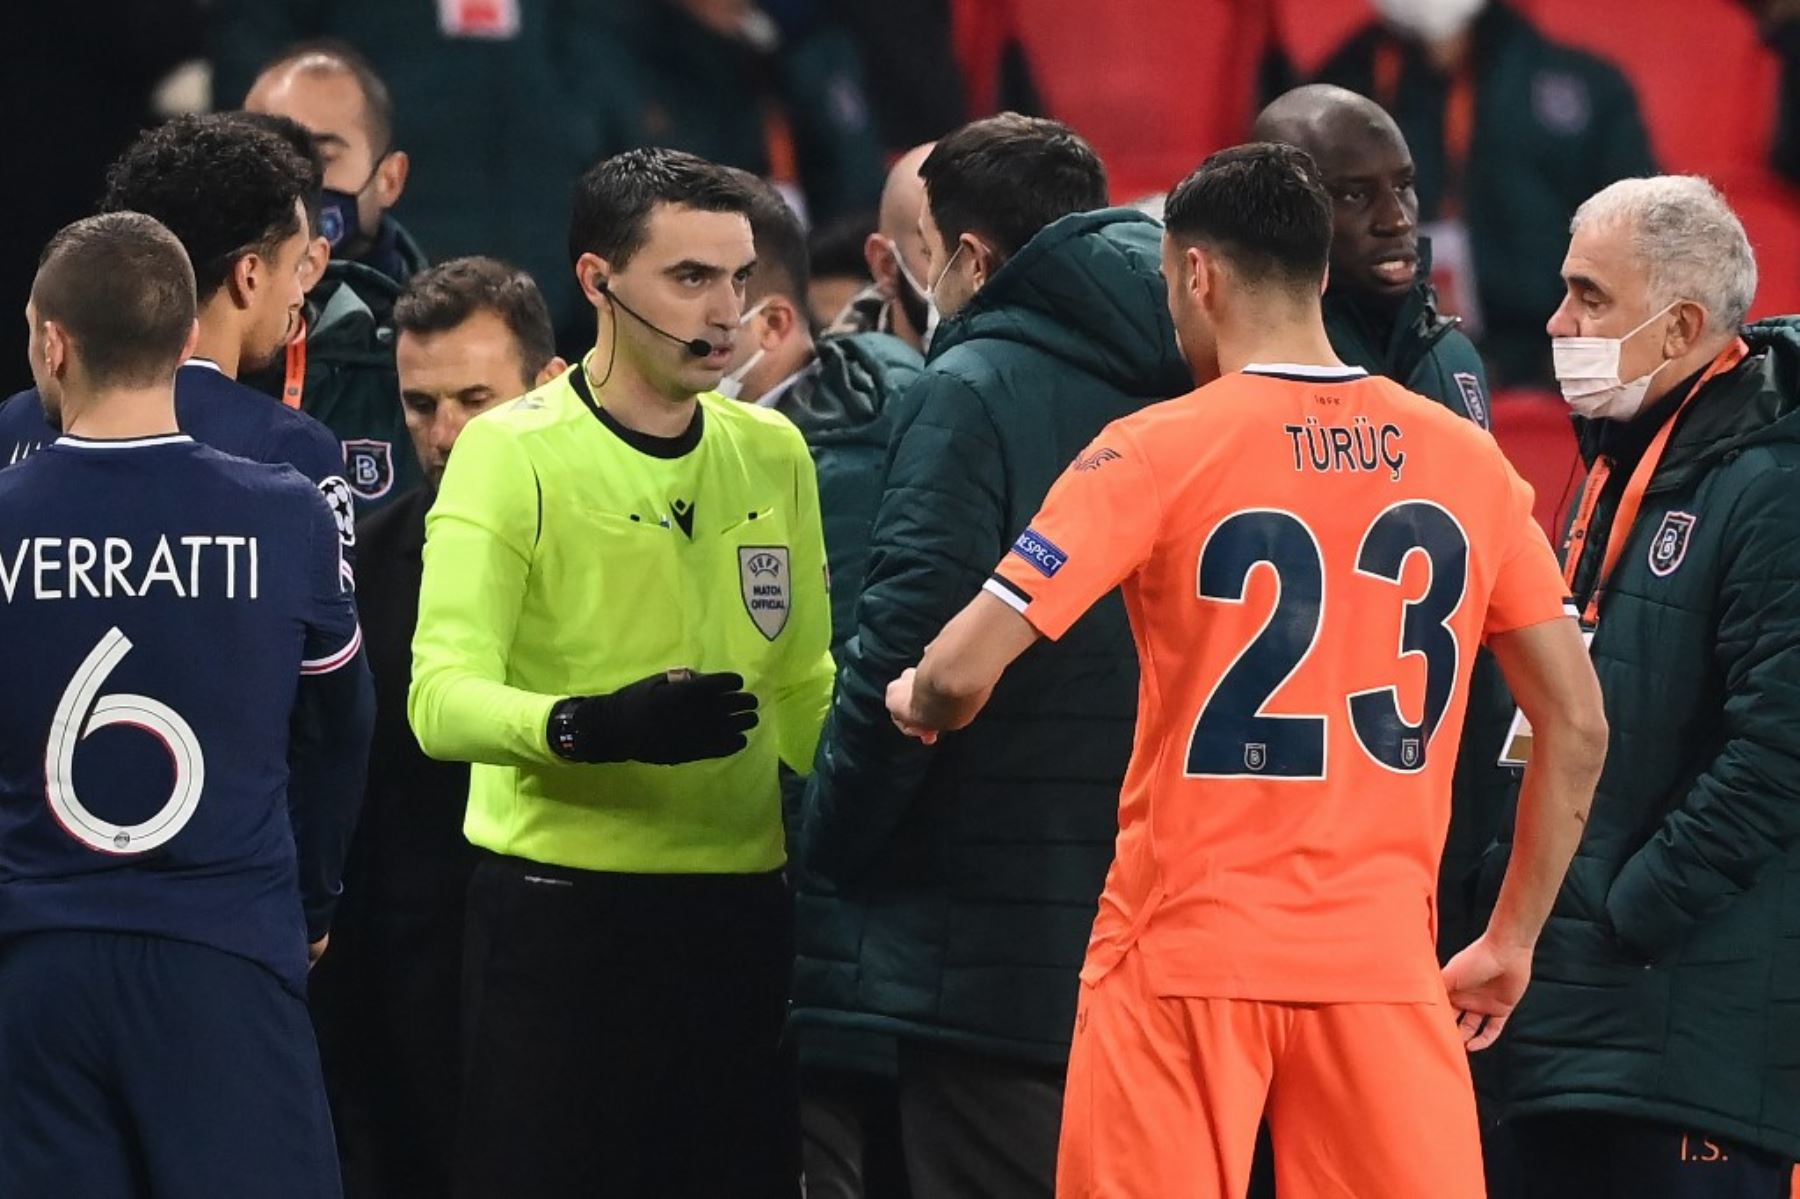 Jugadores del París SG y del Basaksehir turco abandonaron la cancha  tras quedar interrumpido el encuentro, de la última jornada de la fase de grupos de la Liga de Campeones, por supuestos insultos racistas por parte del cuarto árbitro.